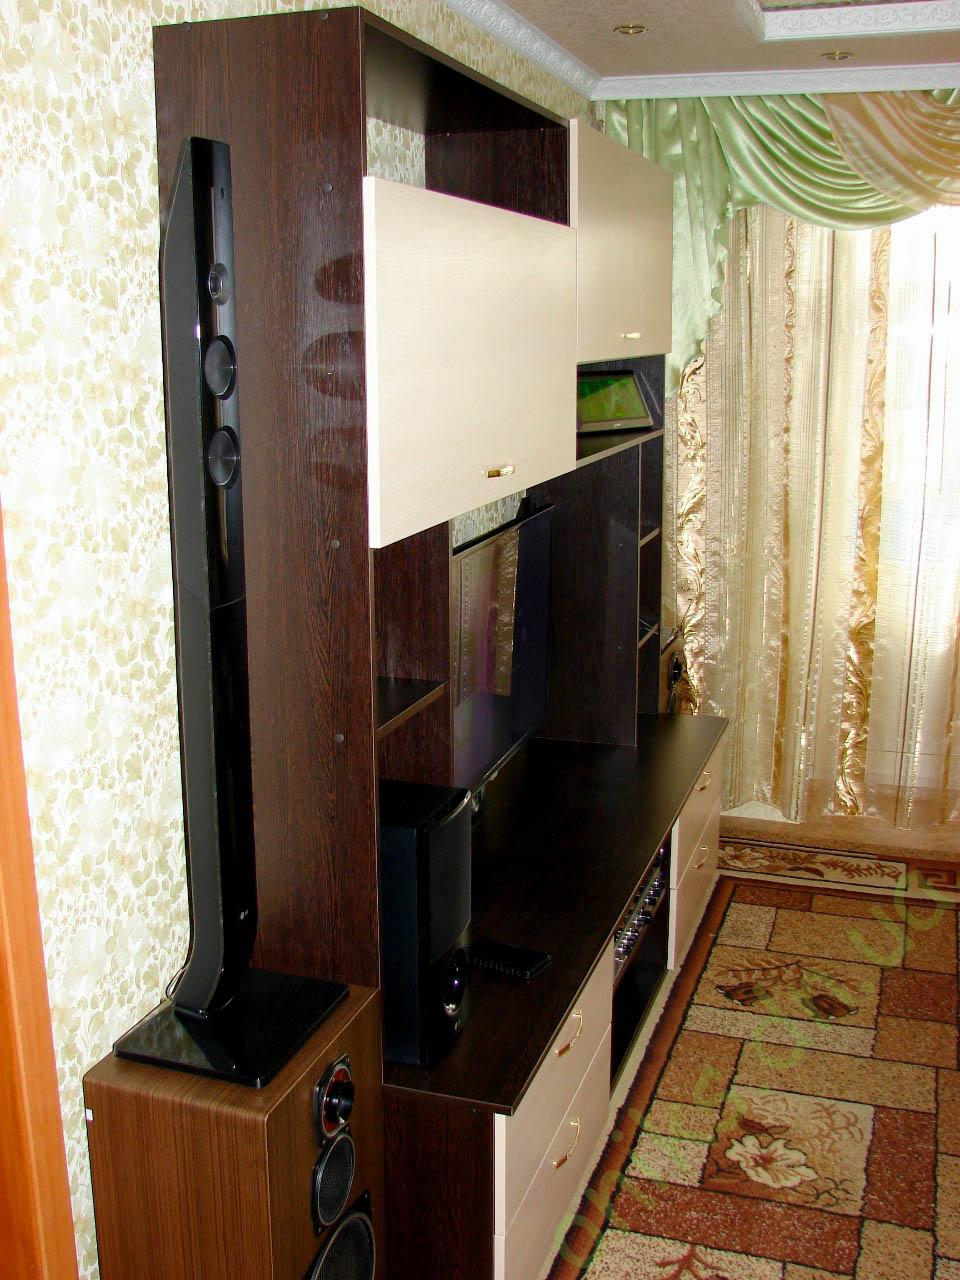 Купить тумбу ТВ с верхними шкафчиками в Донецке